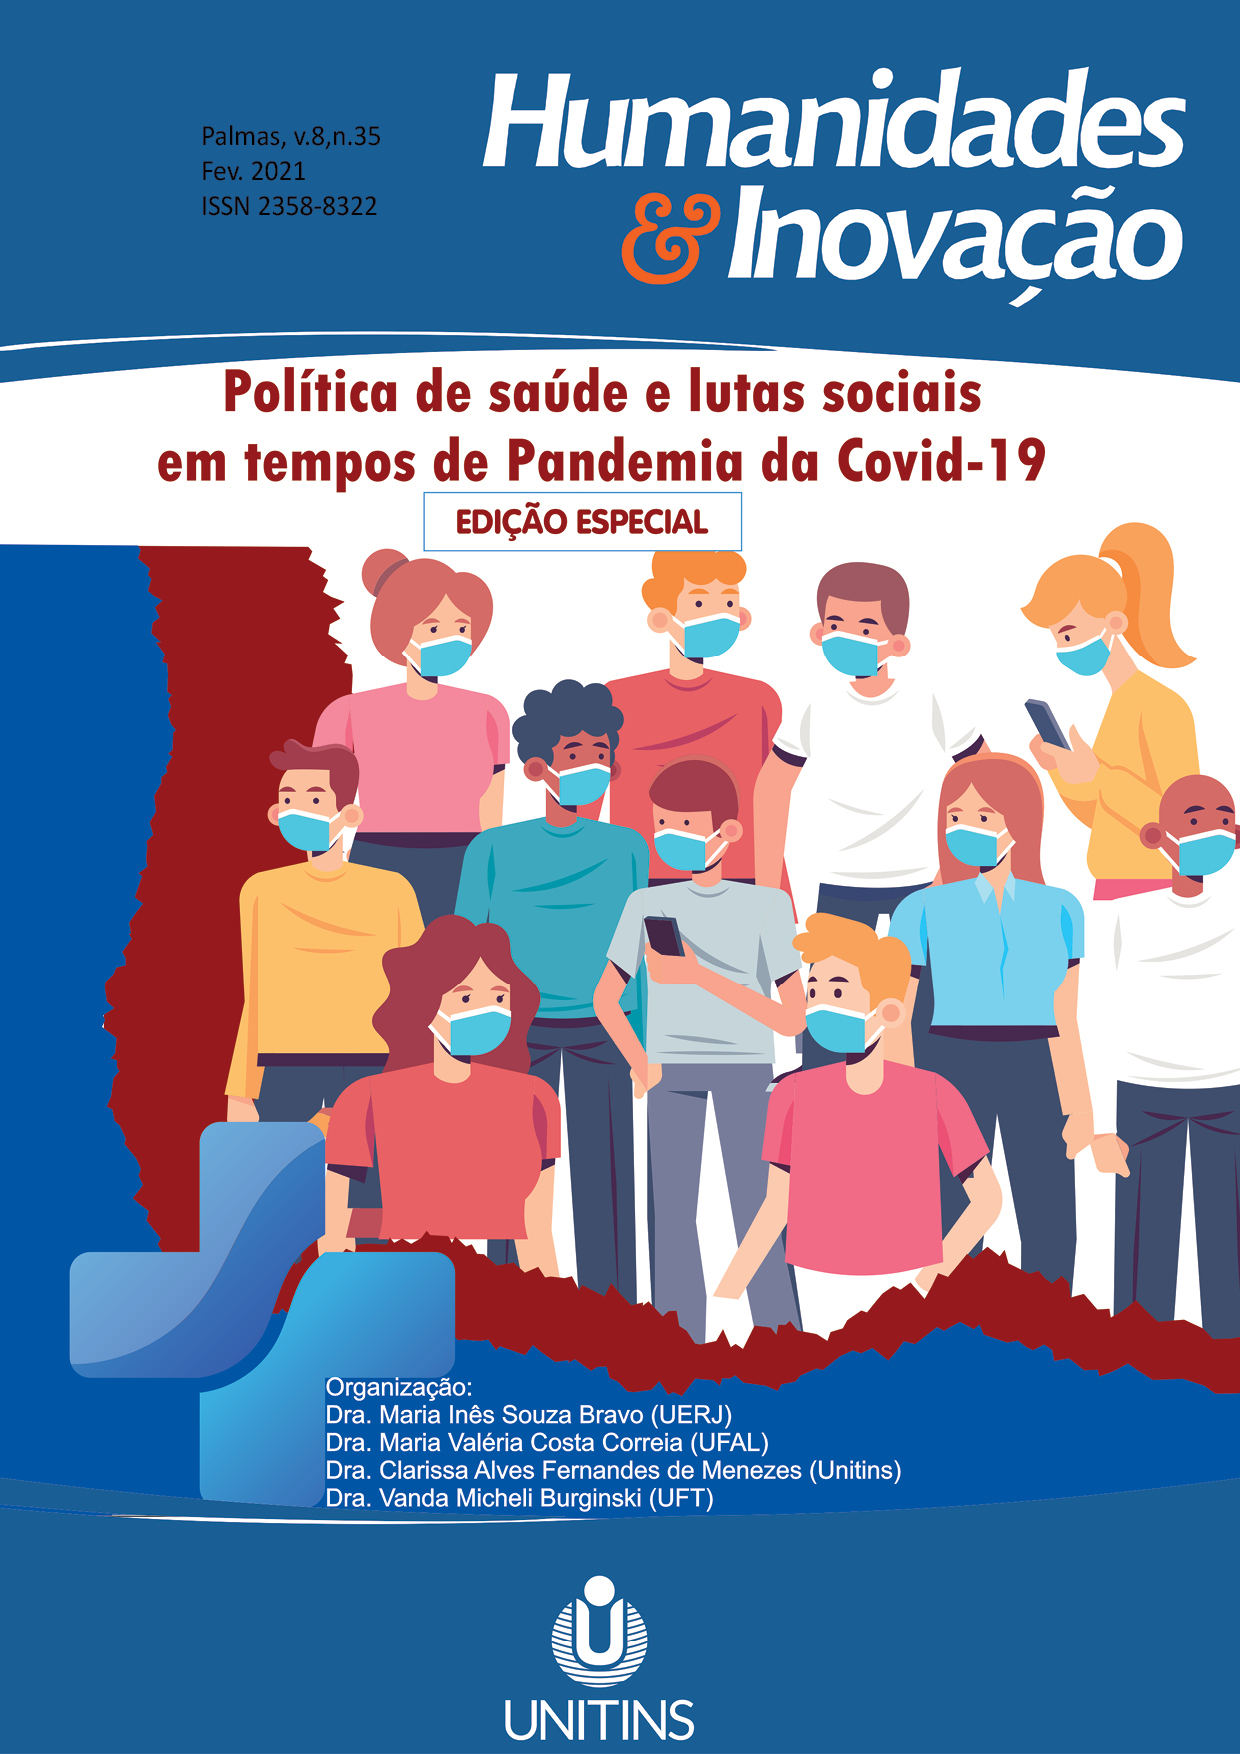 NUPGASC  Gestão e Práticas em Saúde Coletiva no Contexto da Pandemia de  Covid-19 by AREA27 - Issuu